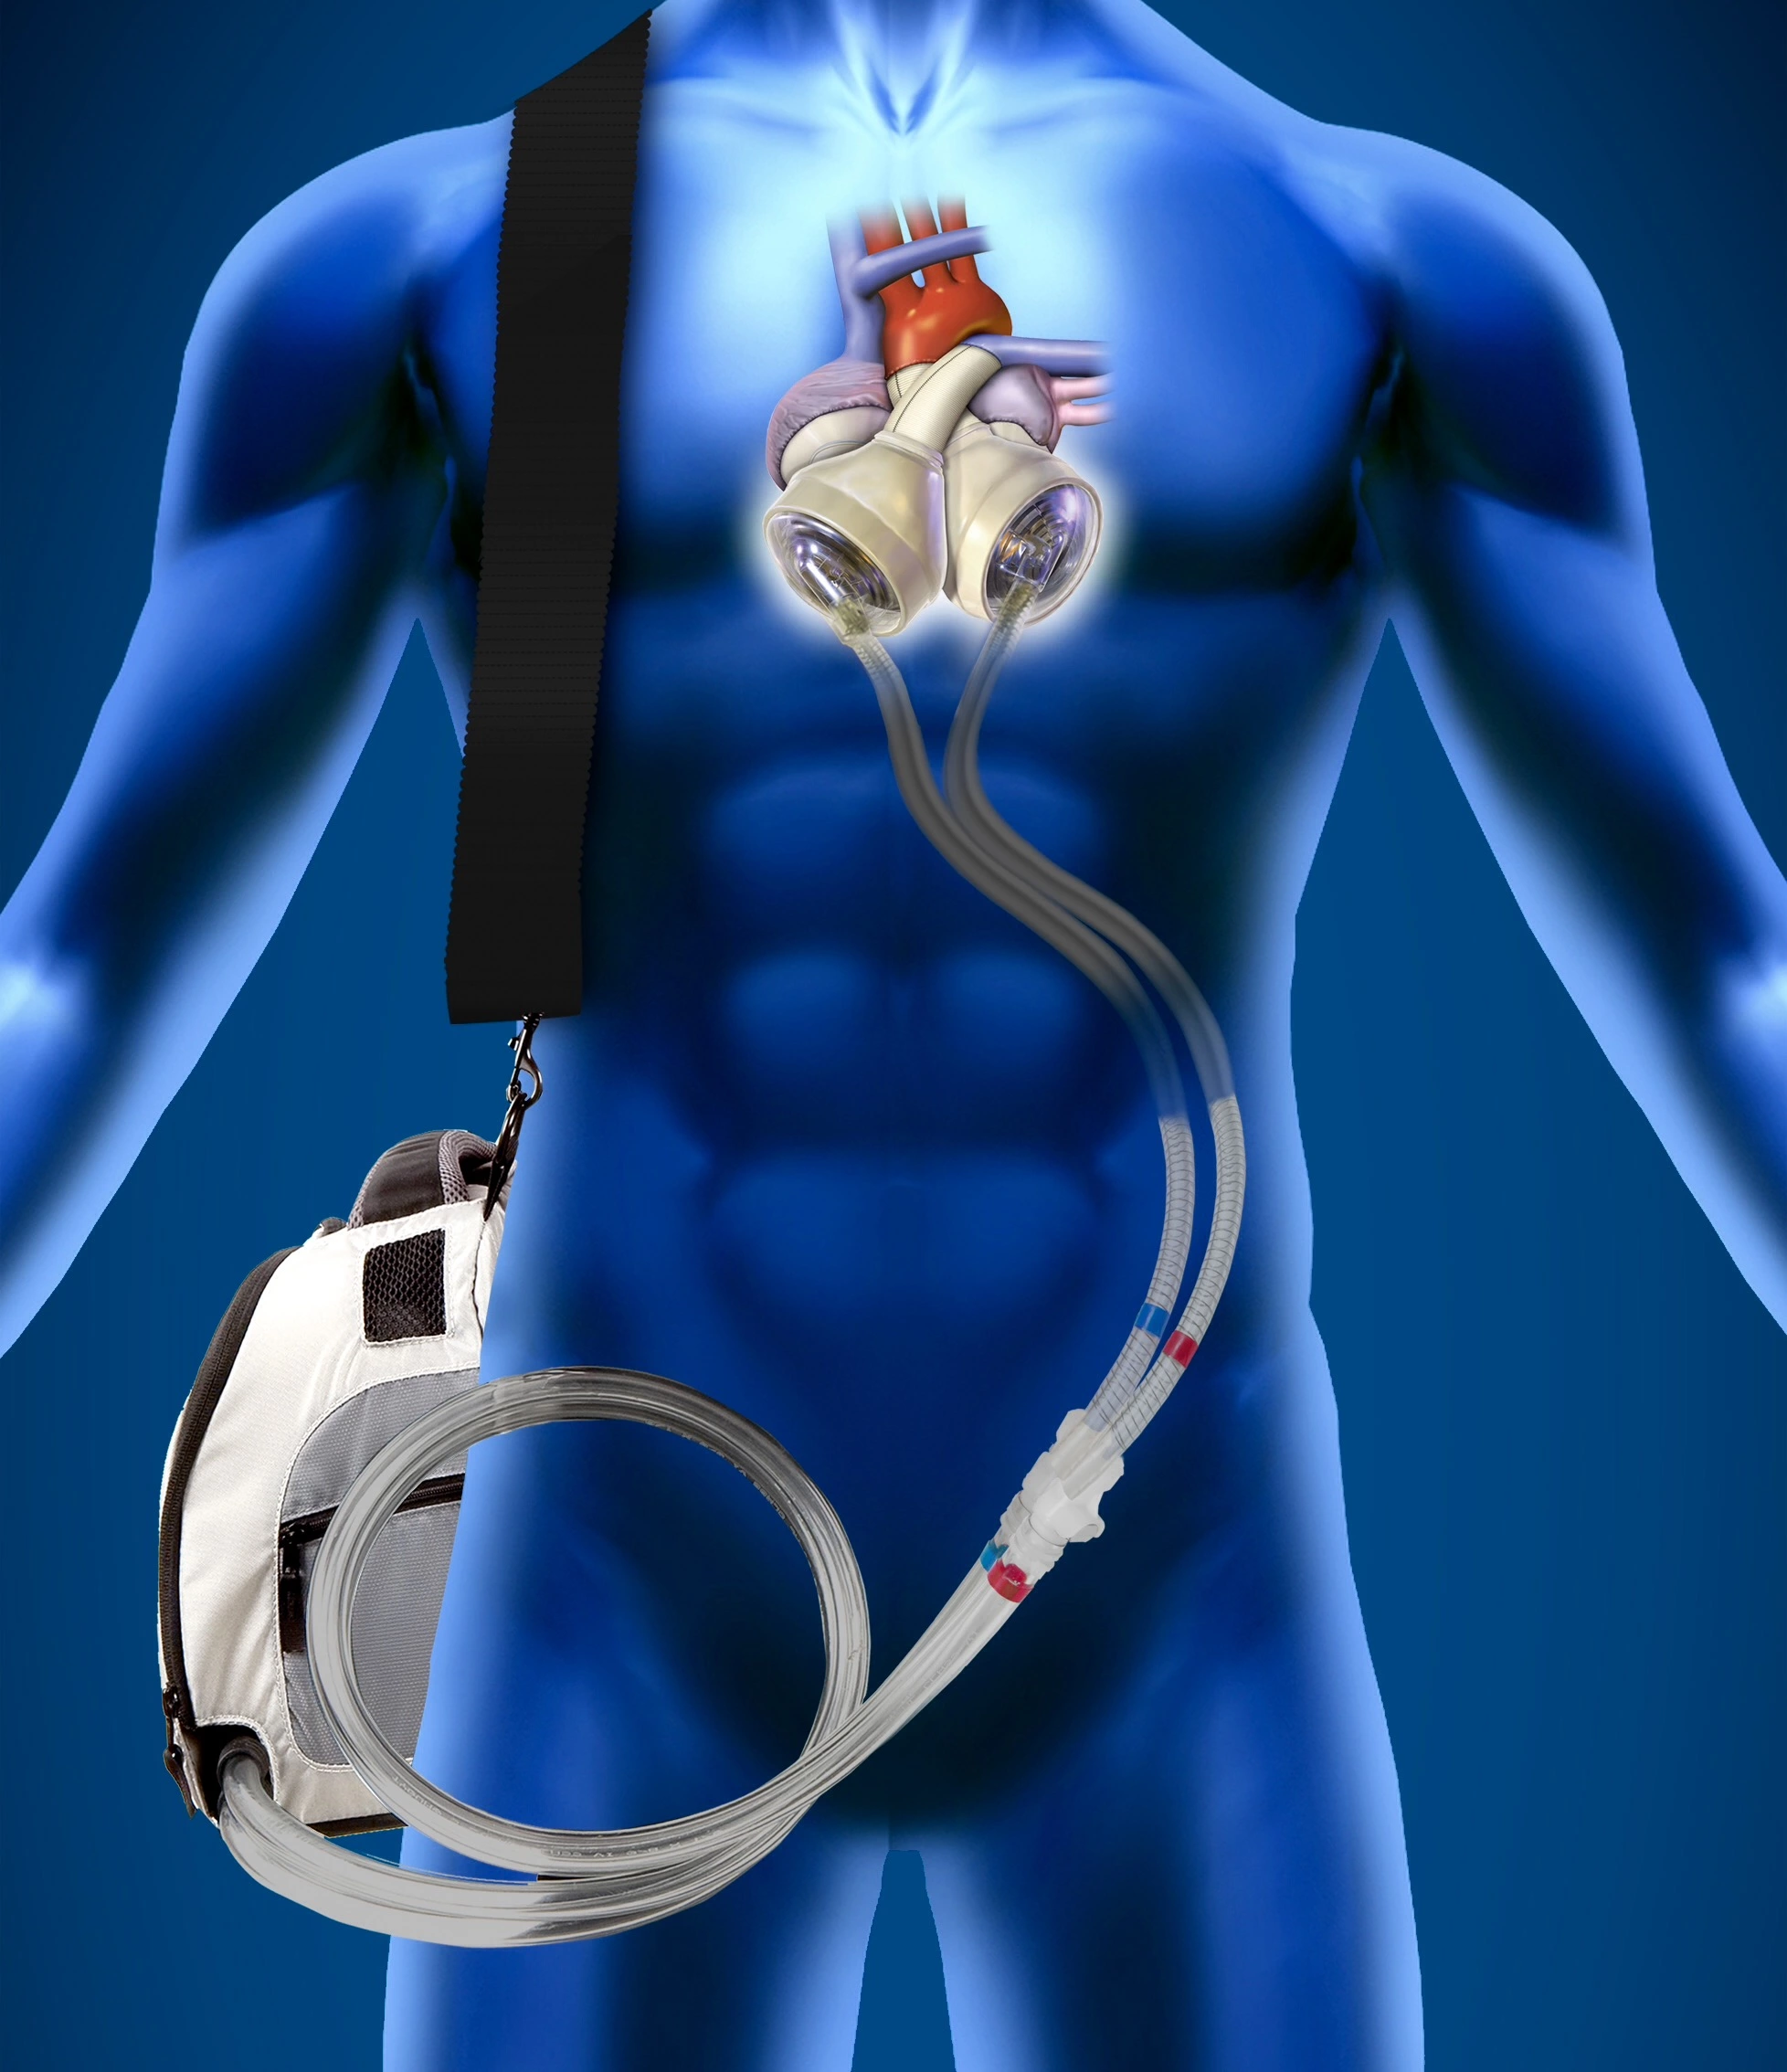 يتوضع القلب الصناعي مكان القلب الطبيعي في صدر المريض ويوصل عبر أنابيب إلى جهاز مراقبة خارج الجسم يحملها المريض طول الوقت